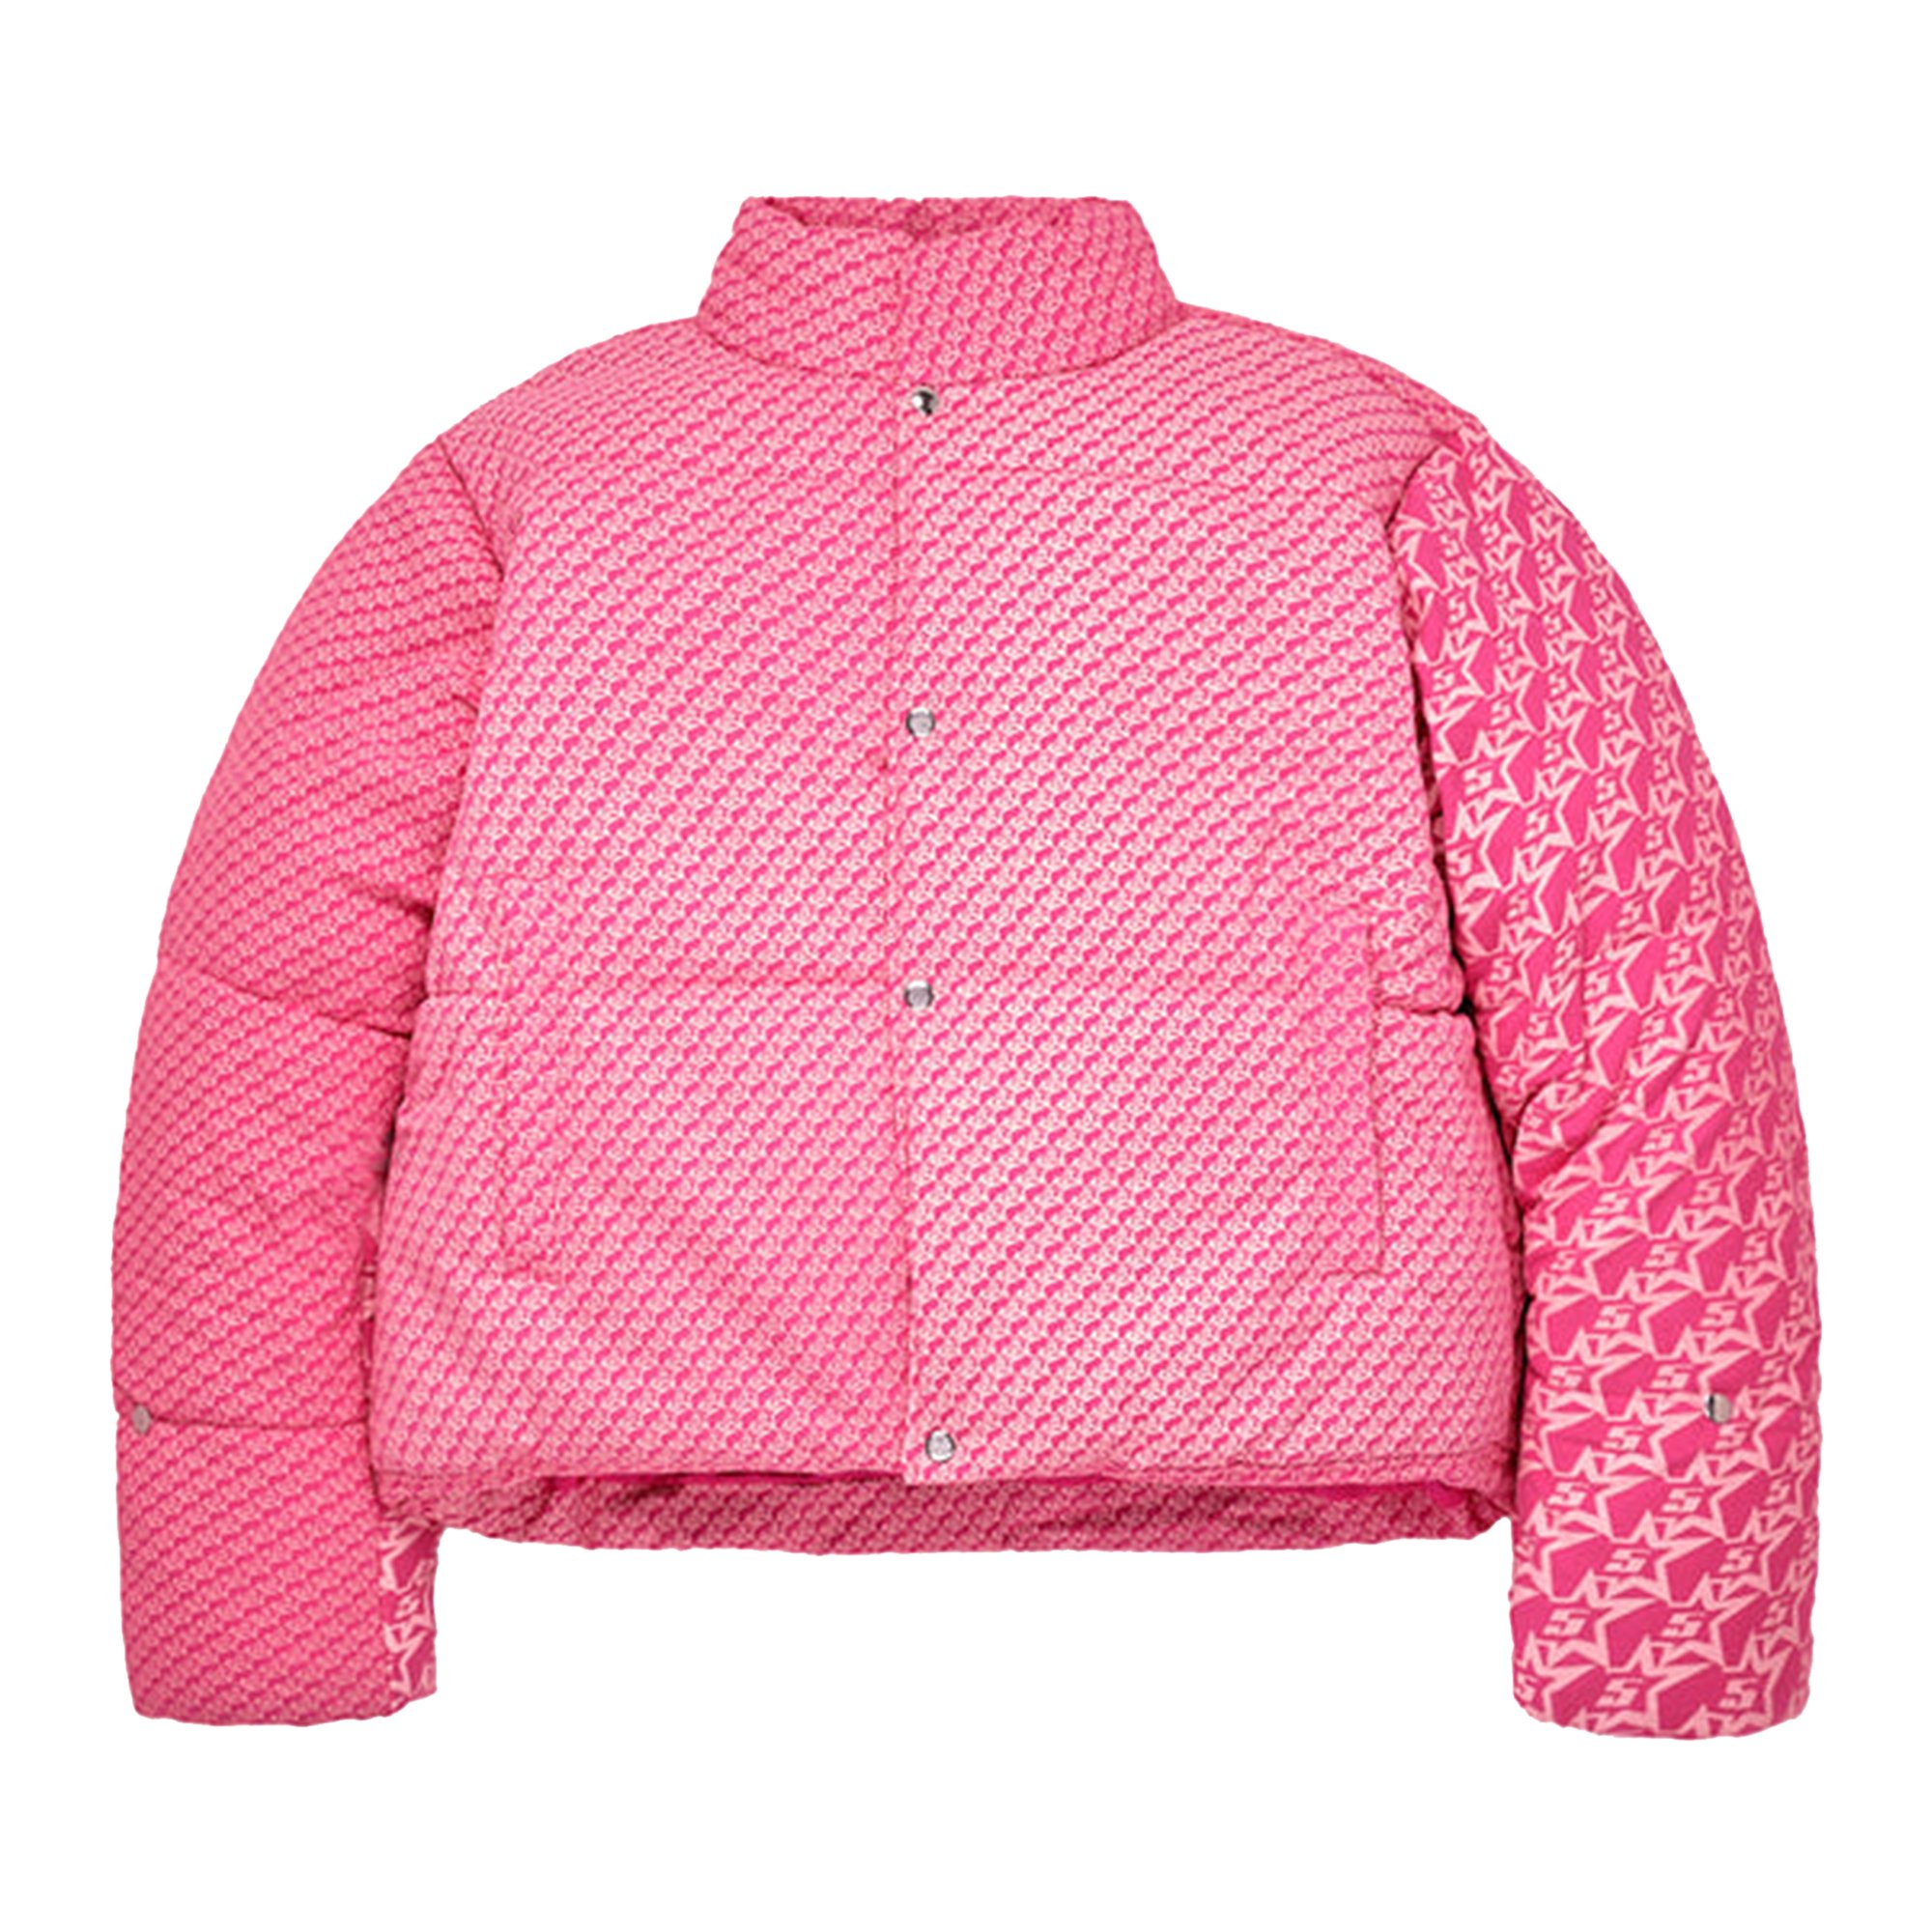 Buy Sp5der 5Star P*nk Puffer Jacket 'Pink' - SPDR 0040 P J | GOAT